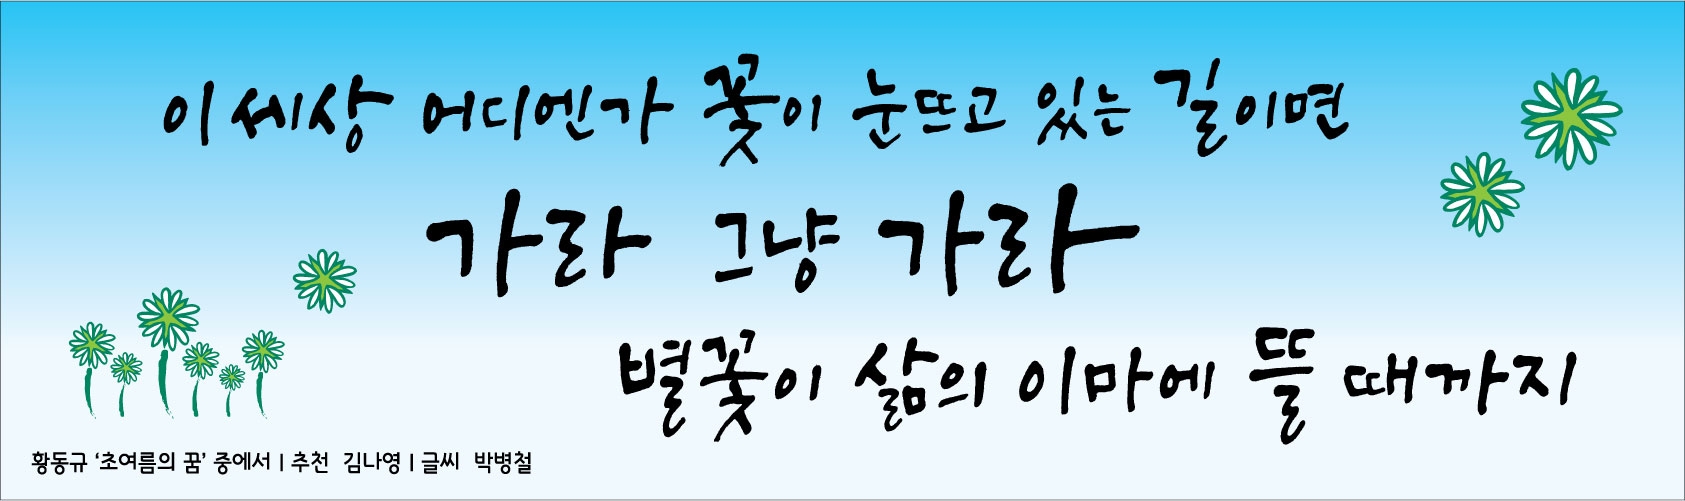 2012년 부산문화글판 여름편썸네일